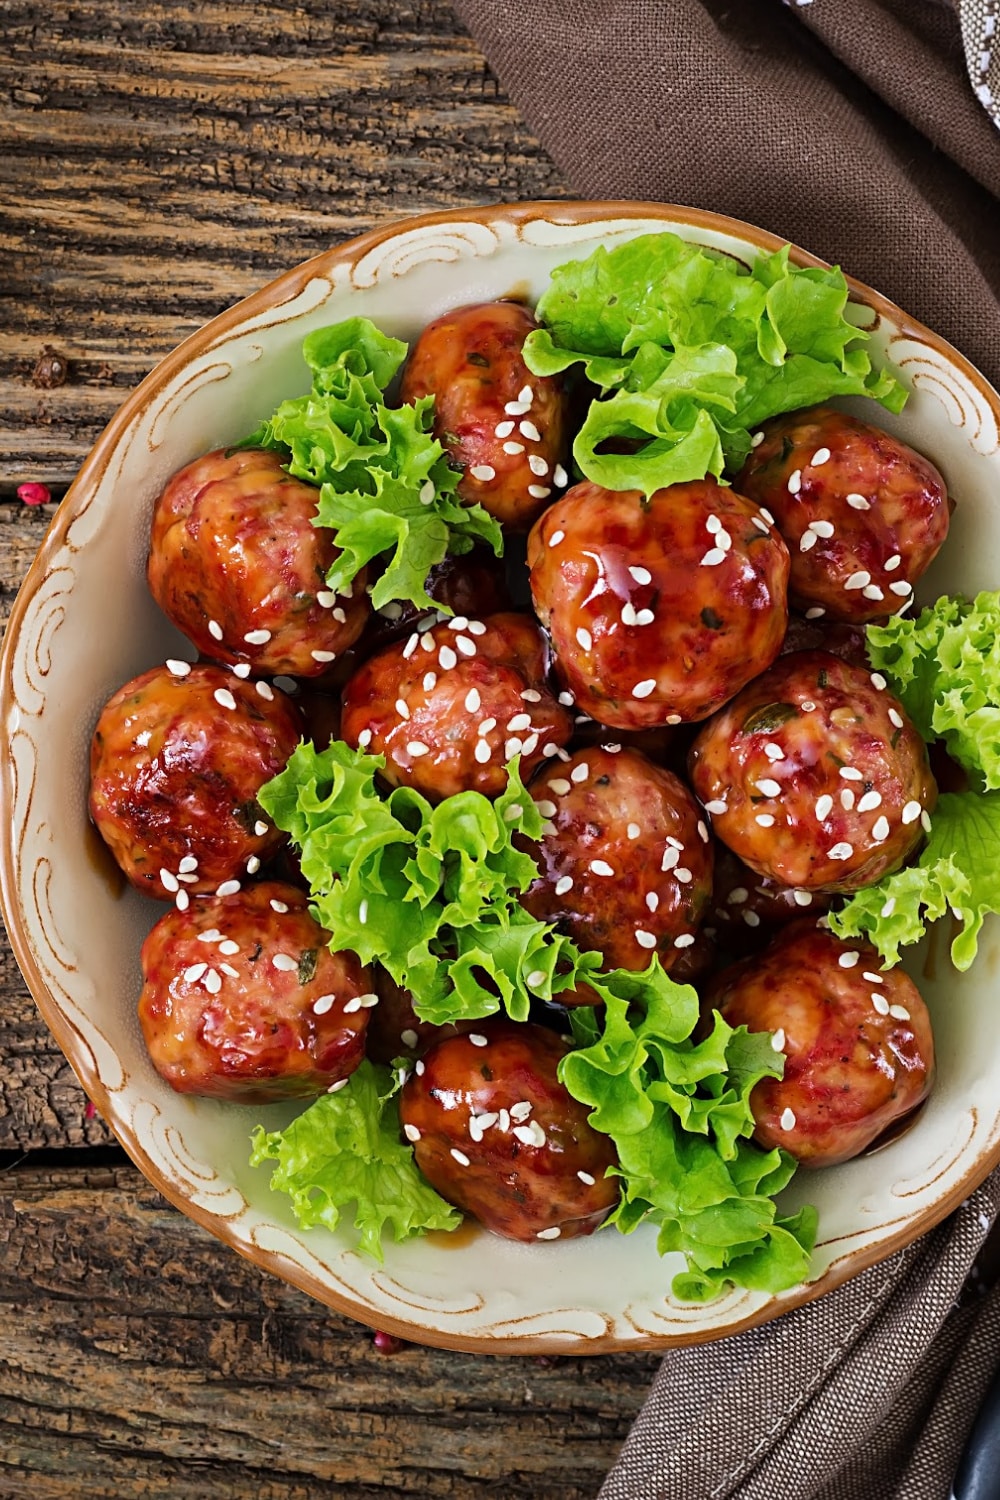 https://www.inspiringsavings.com/wp-content/uploads/2022/12/Hidden-Veggie-Meatballs-in-bowl.jpg